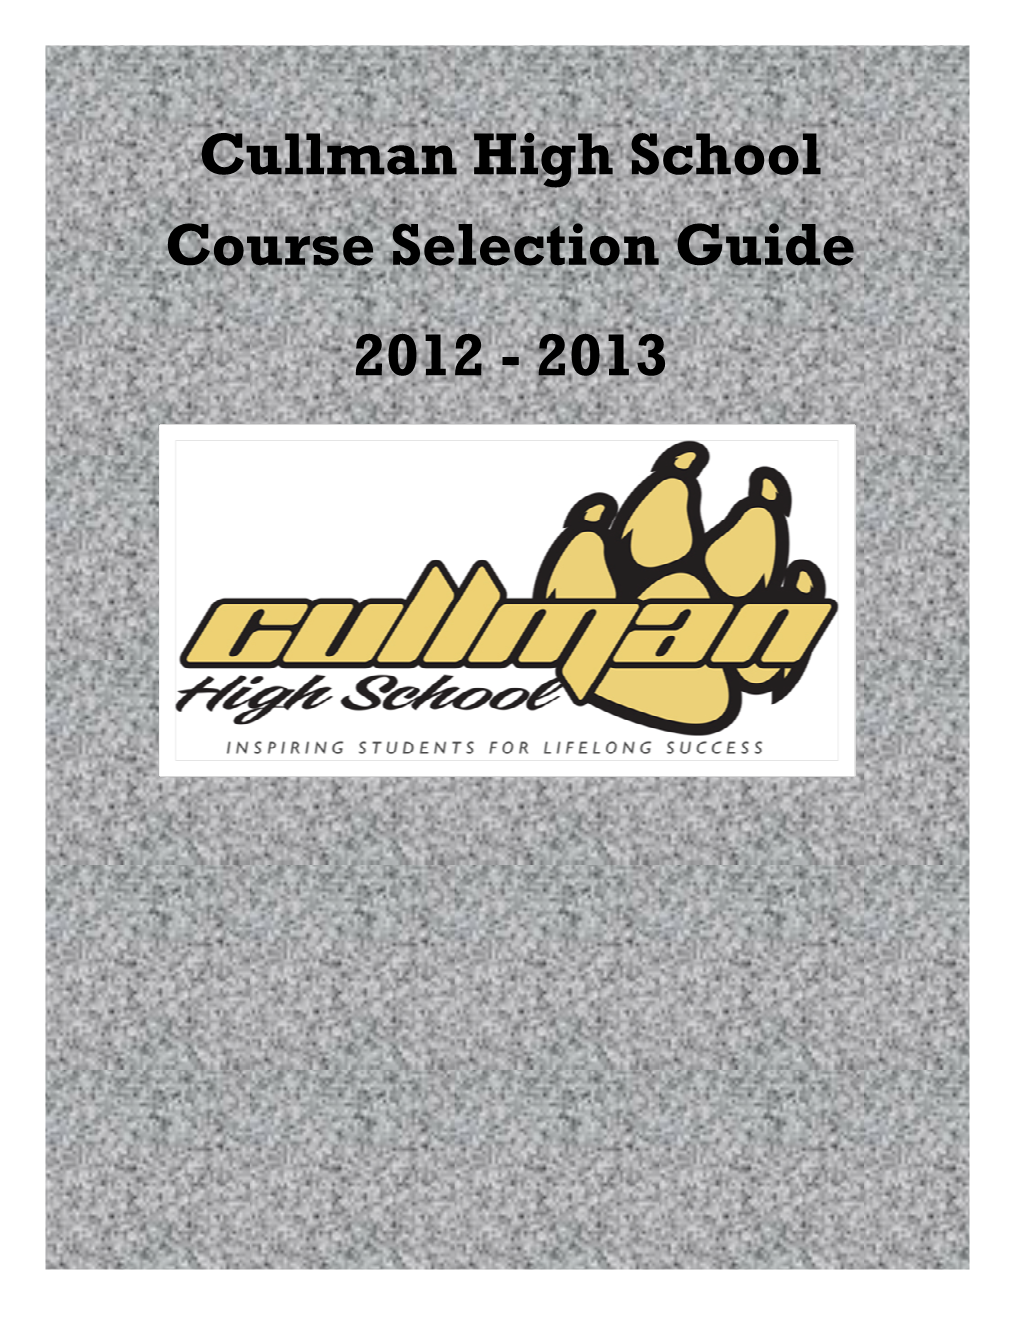 Cullman High School Course Selection Guide 2012 - 2013